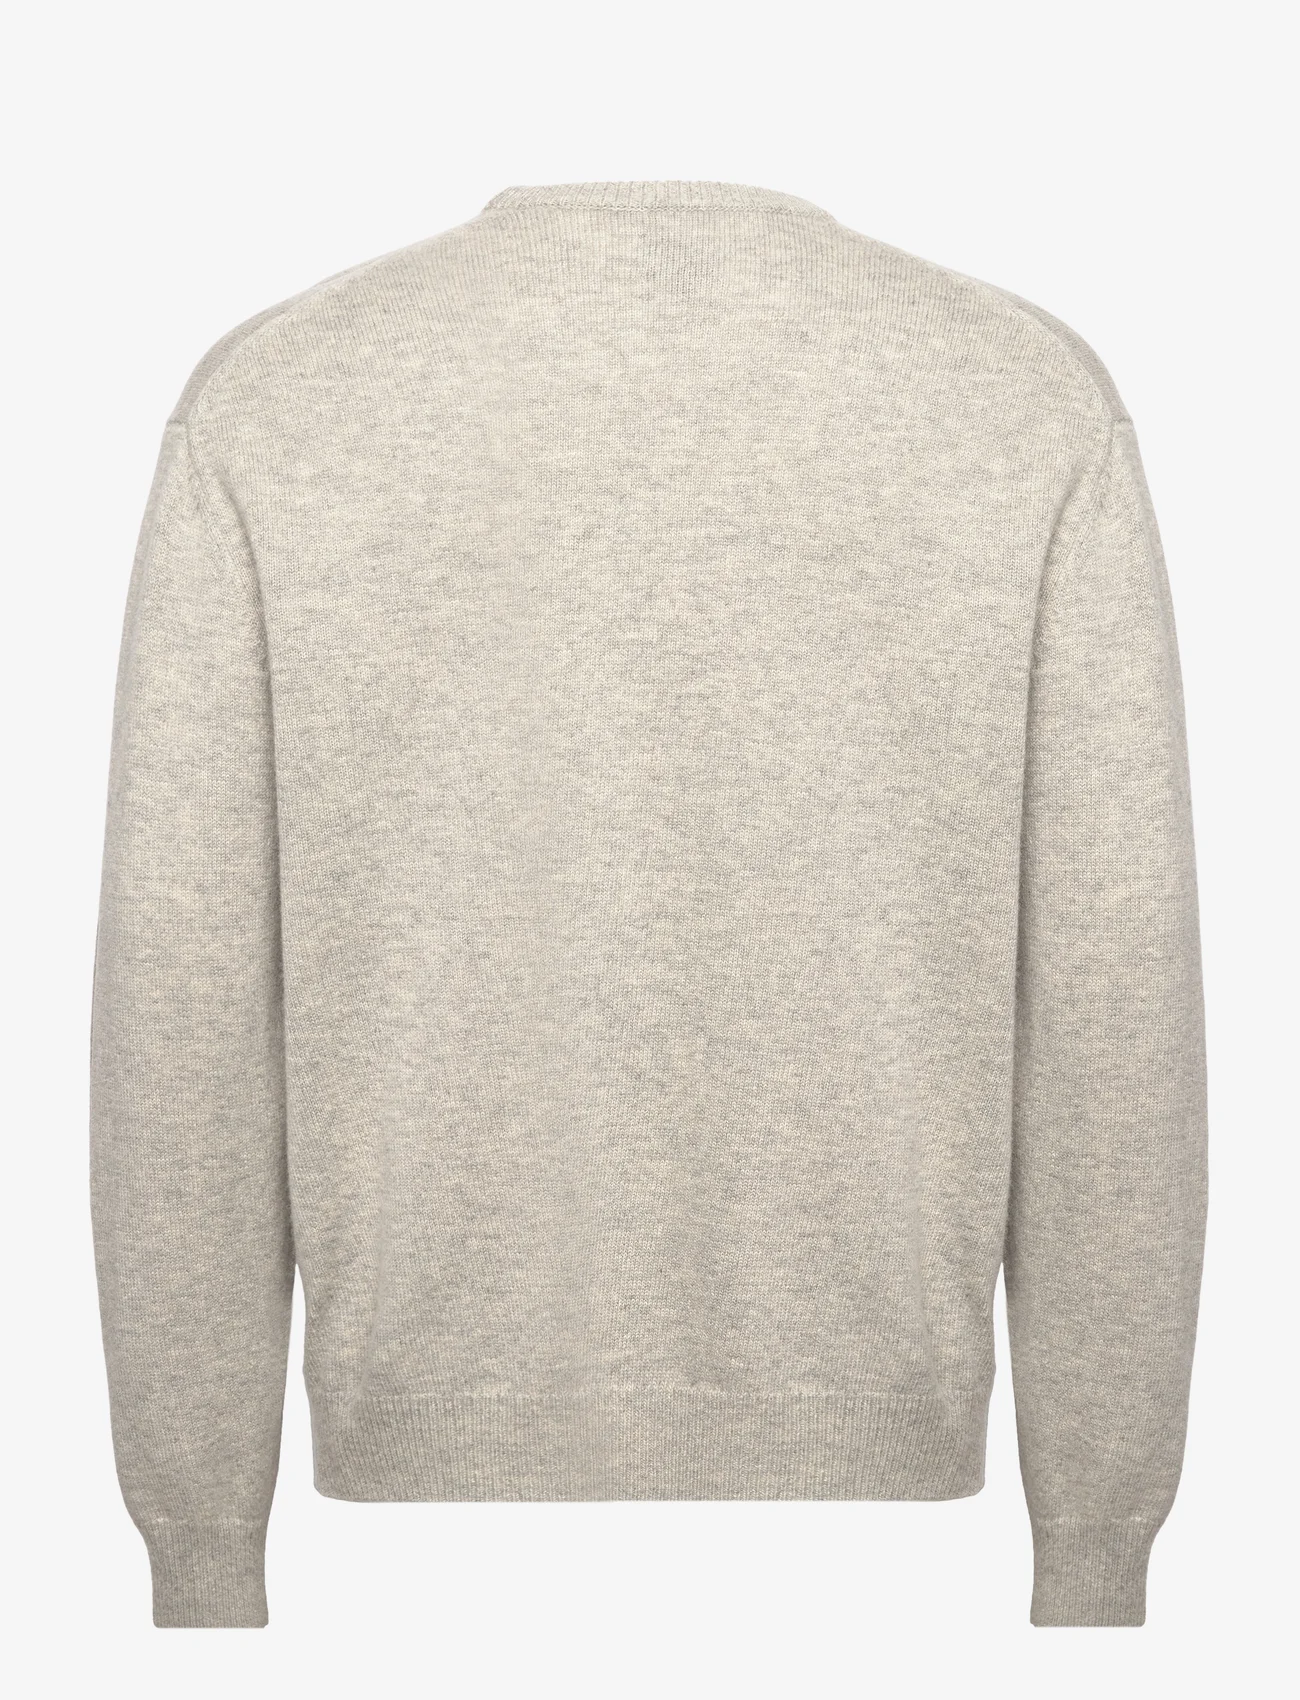 Tonsure - Philip knit crewneck - okrągły dekolt - light grey melange - 1